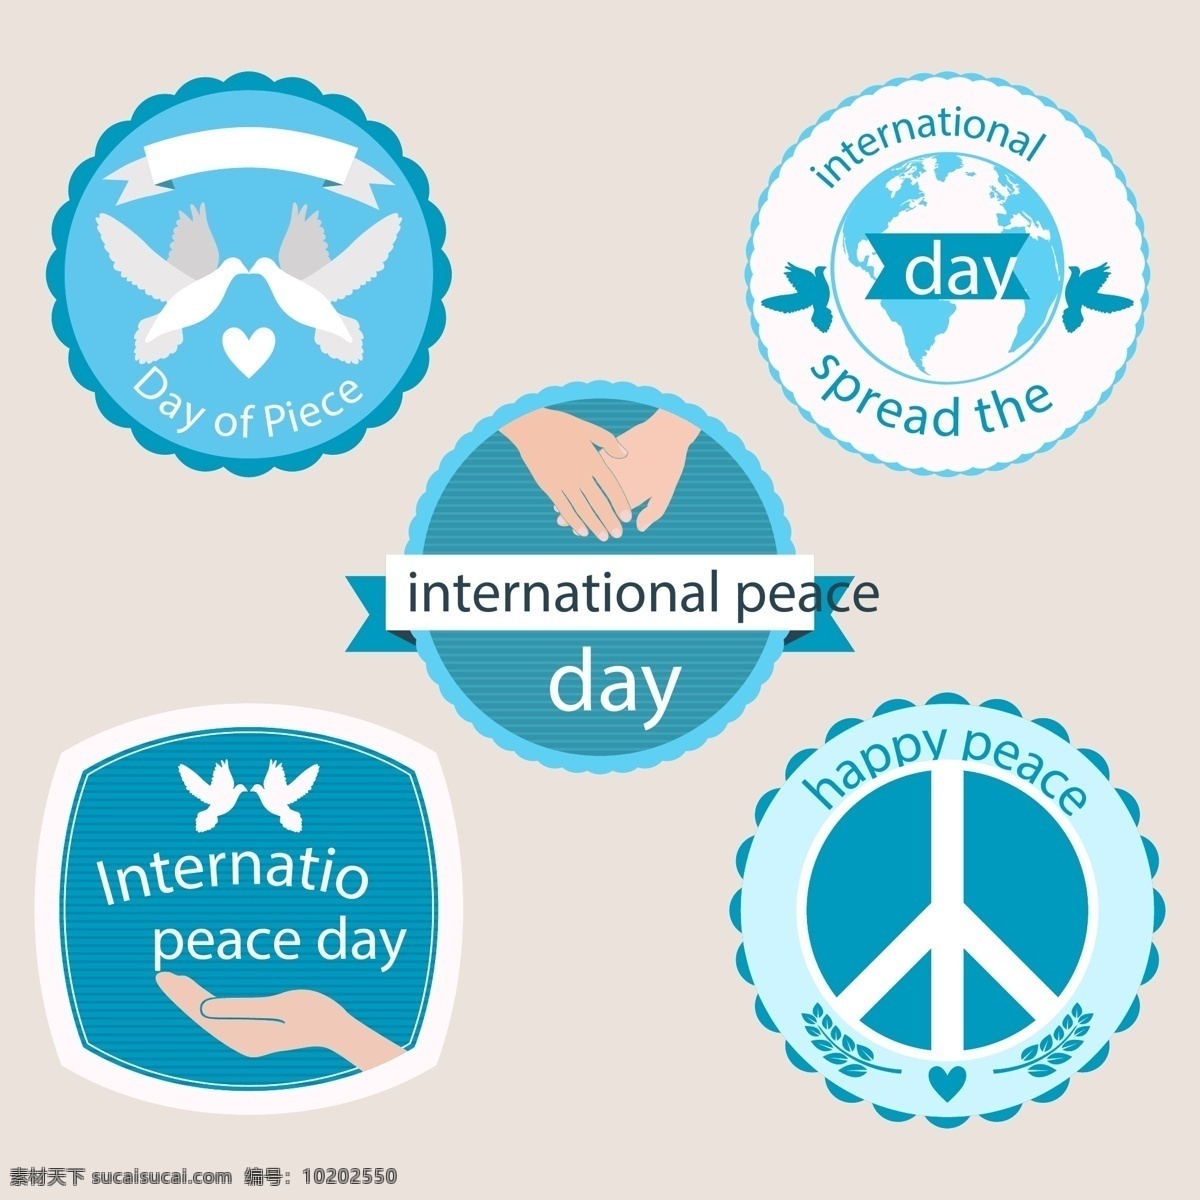 款 世界 和平 节日 矢量 蓝色 地球 圆形 矢量素材 设计素材 白鸽 双手 平面素材